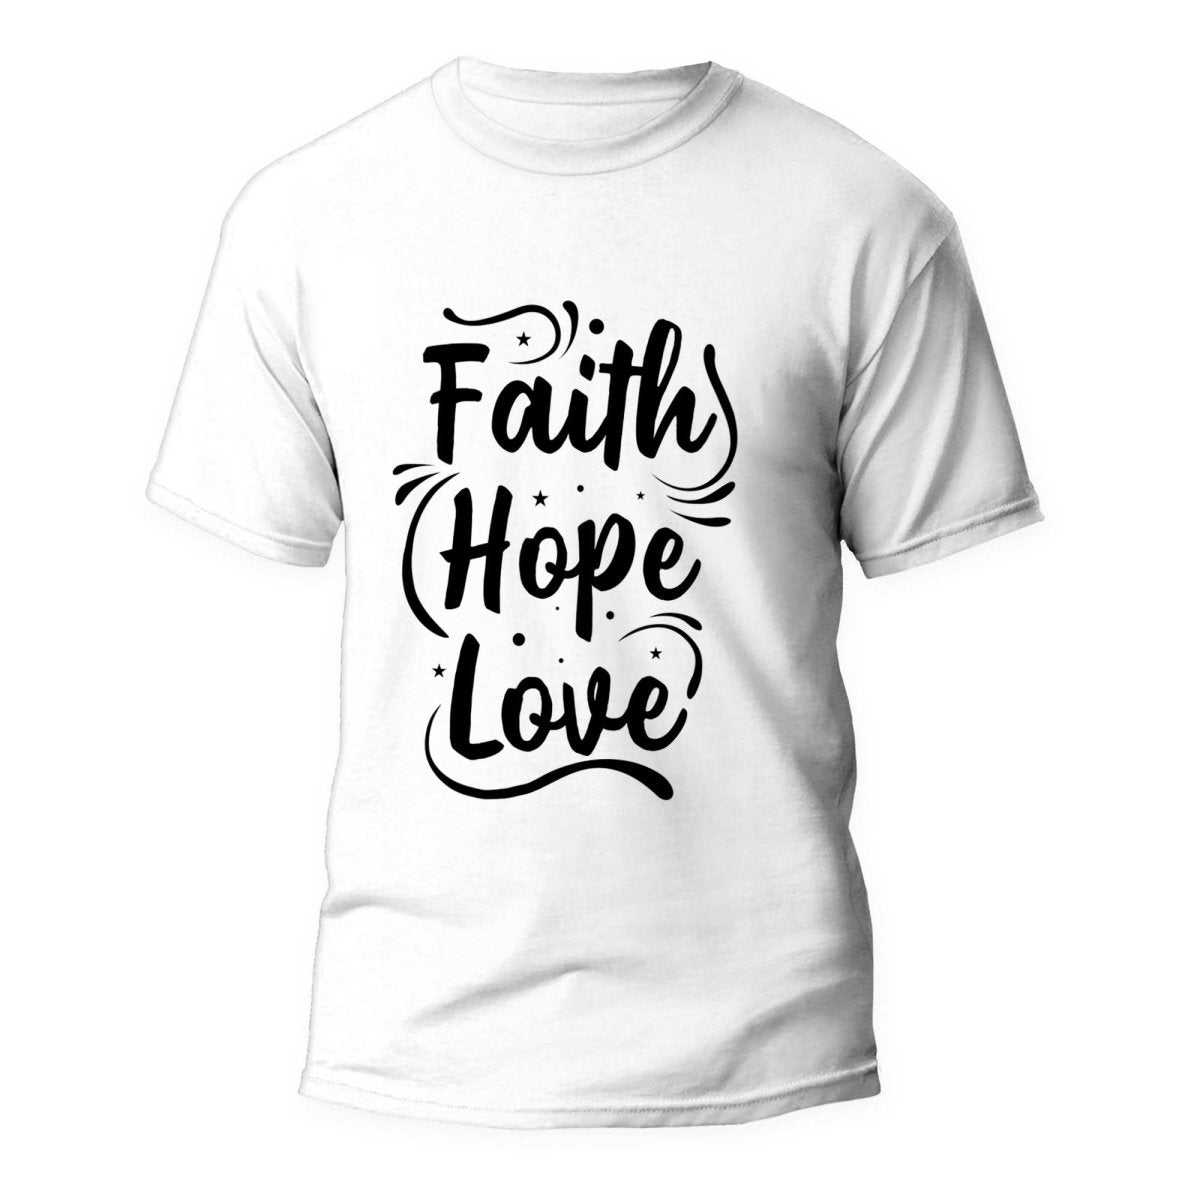 Tricou Faith Hope Love - clevny.ro